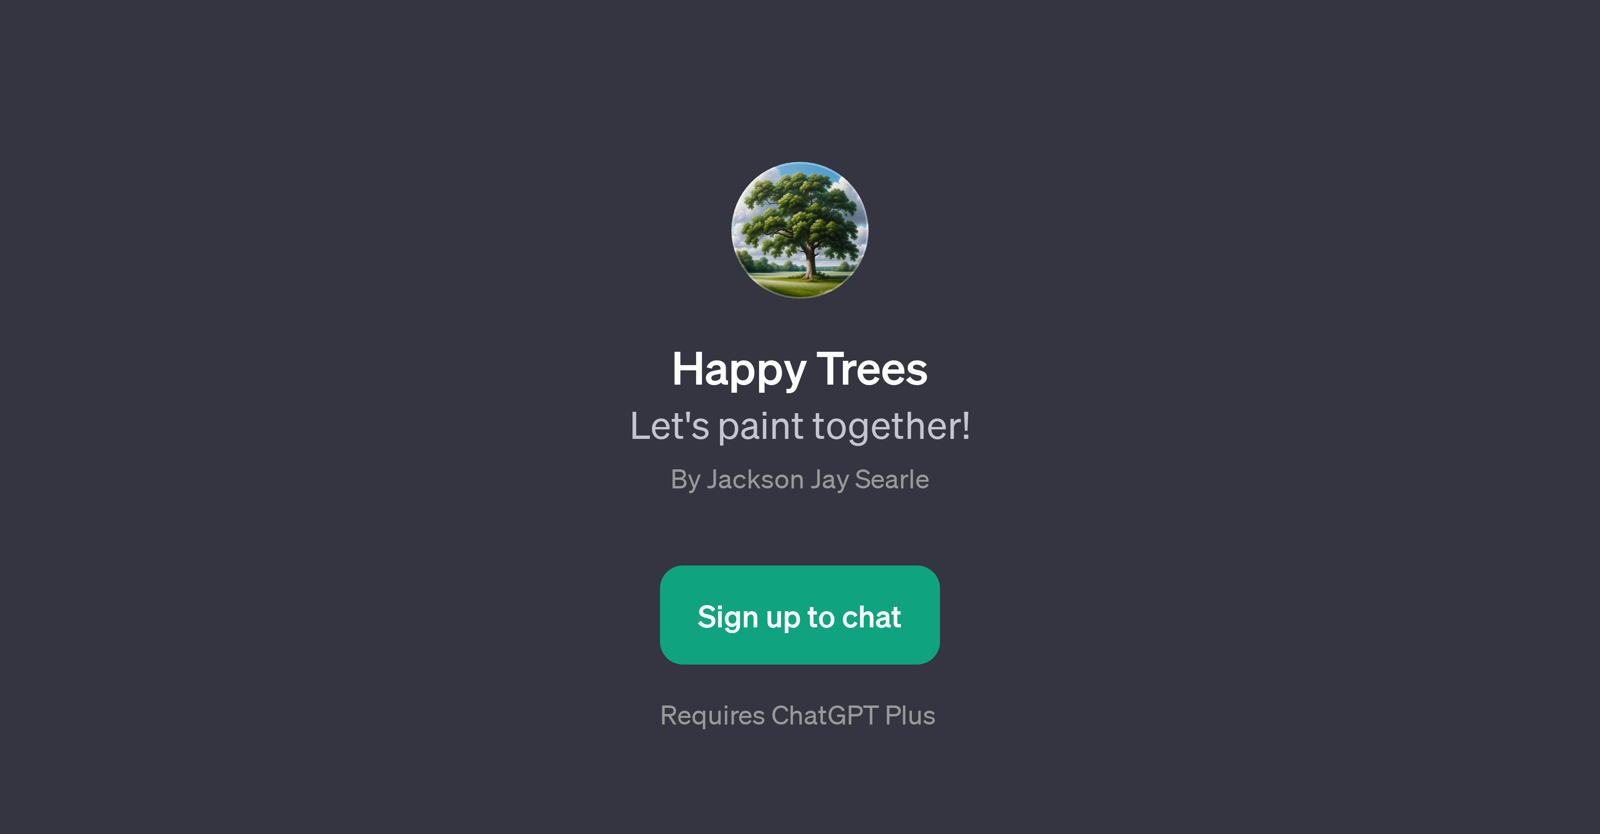 Happy Trees website